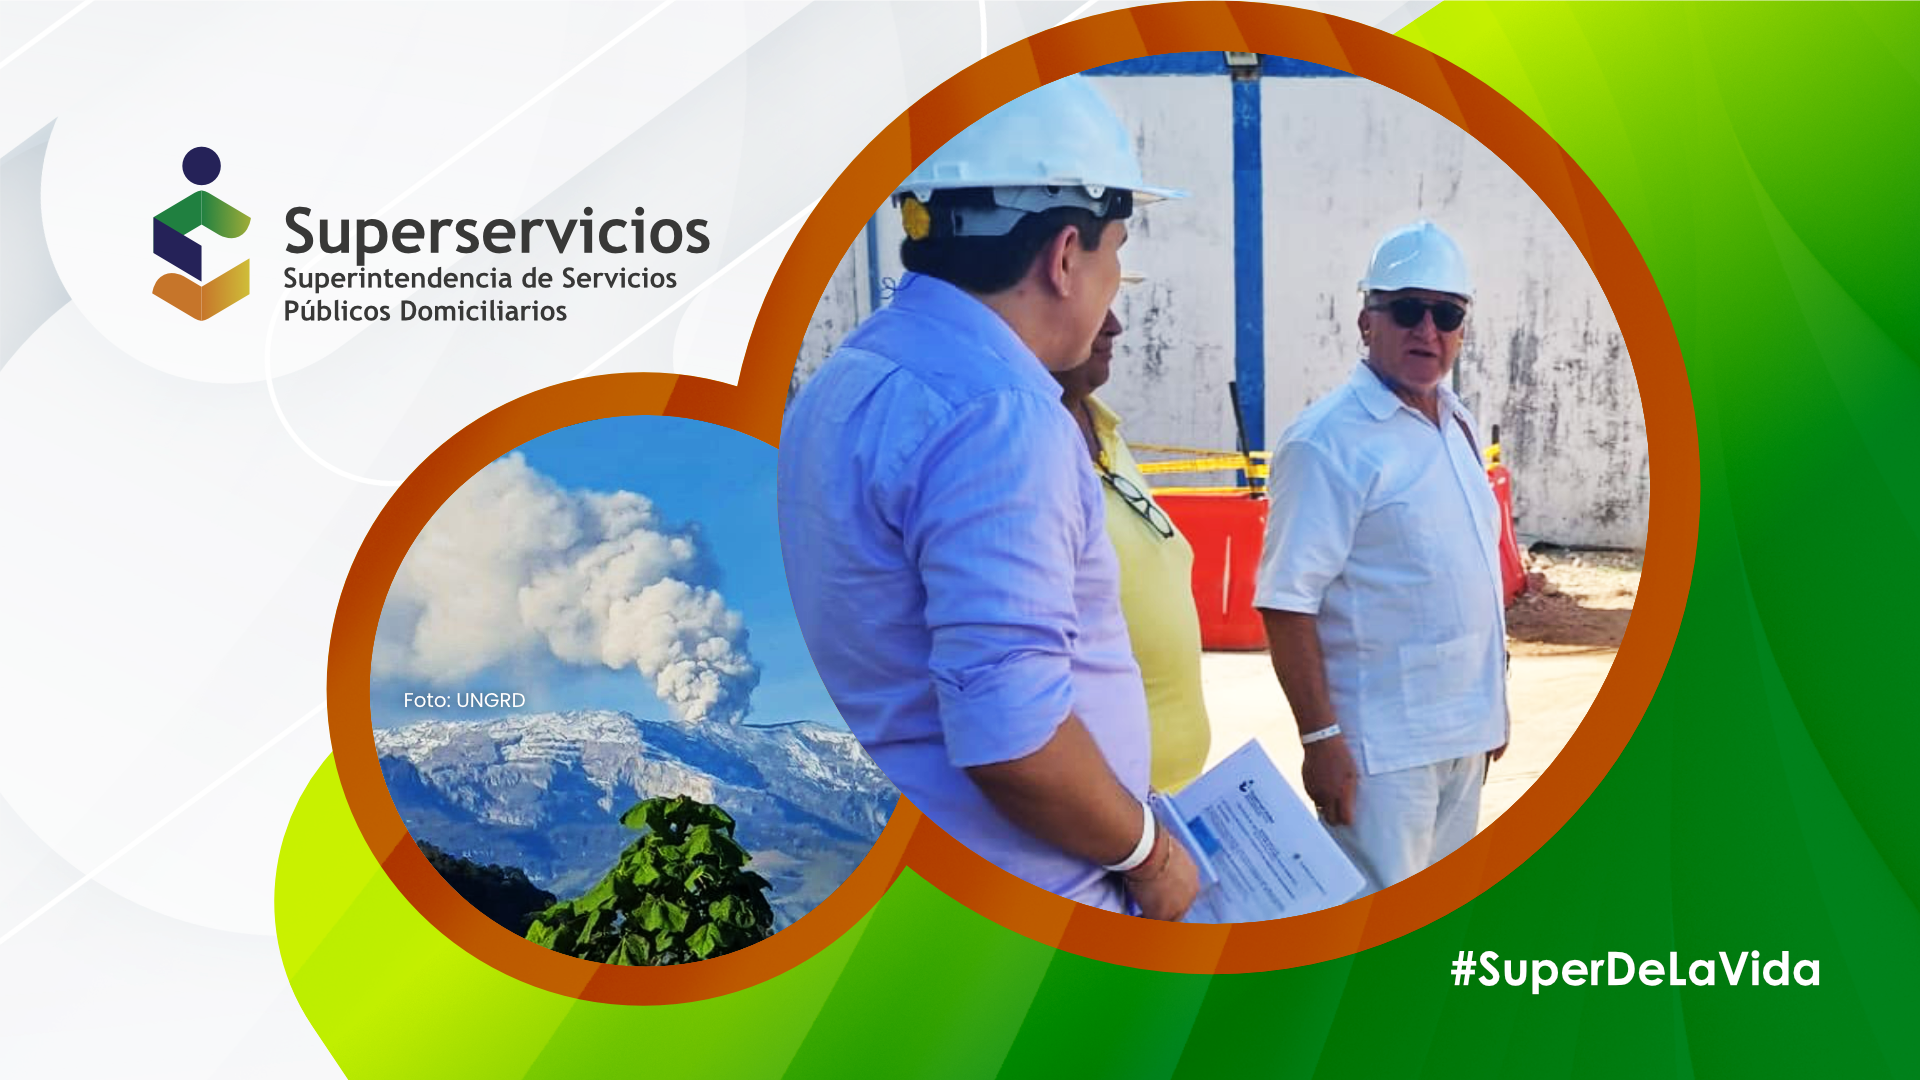 Superservicios solicitó a autoridades y prestadores prepararse para asegurar el suministro de los servicios públicos en las zonas de influencia del Nevado del Ruiz
